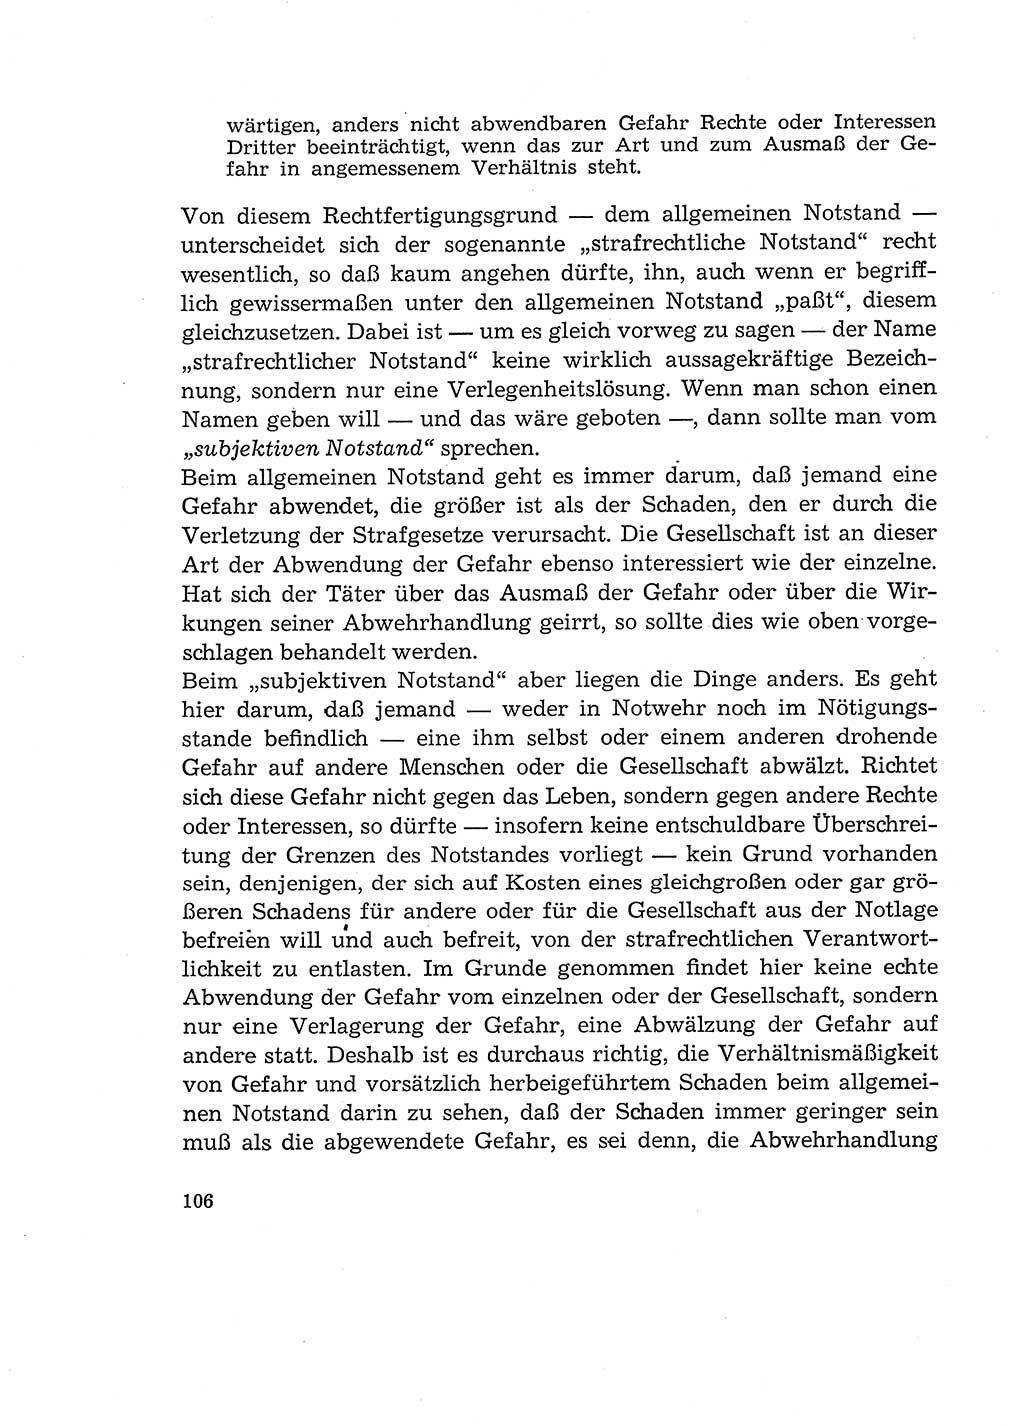 Verantwortung und Schuld im neuen Strafgesetzbuch (StGB) [Deutsche Demokratische Republik (DDR)] 1964, Seite 106 (Verantw. Sch. StGB DDR 1964, S. 106)